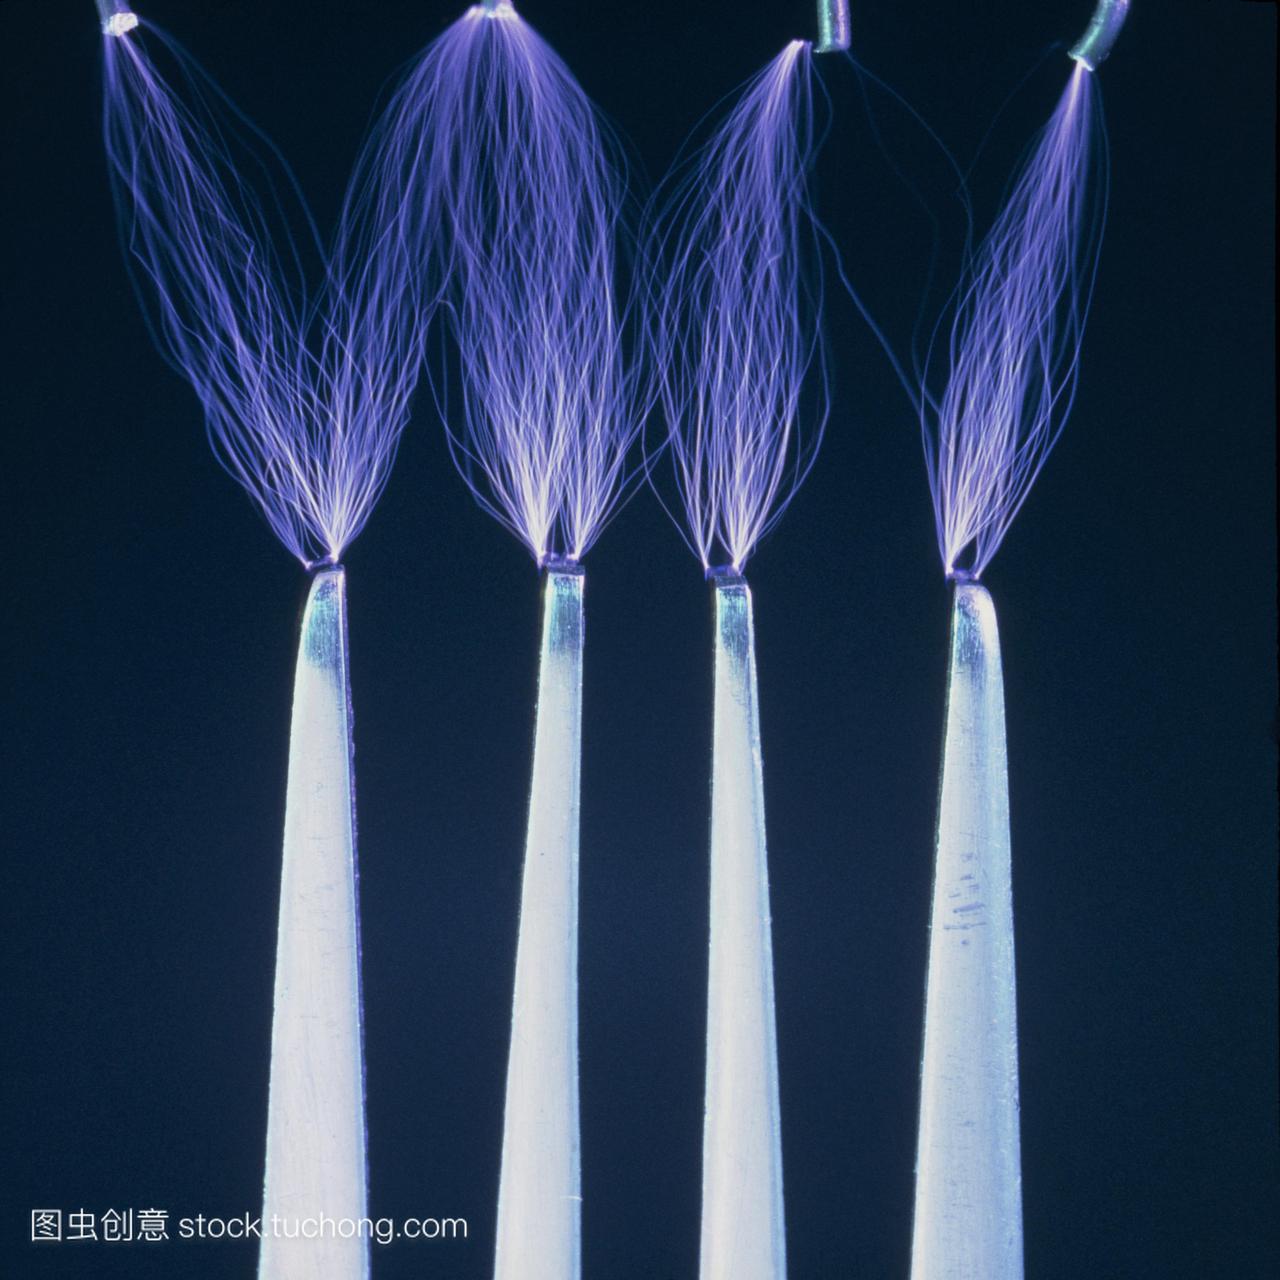 静电放电产生的火花在叉子和四个电极之间。许